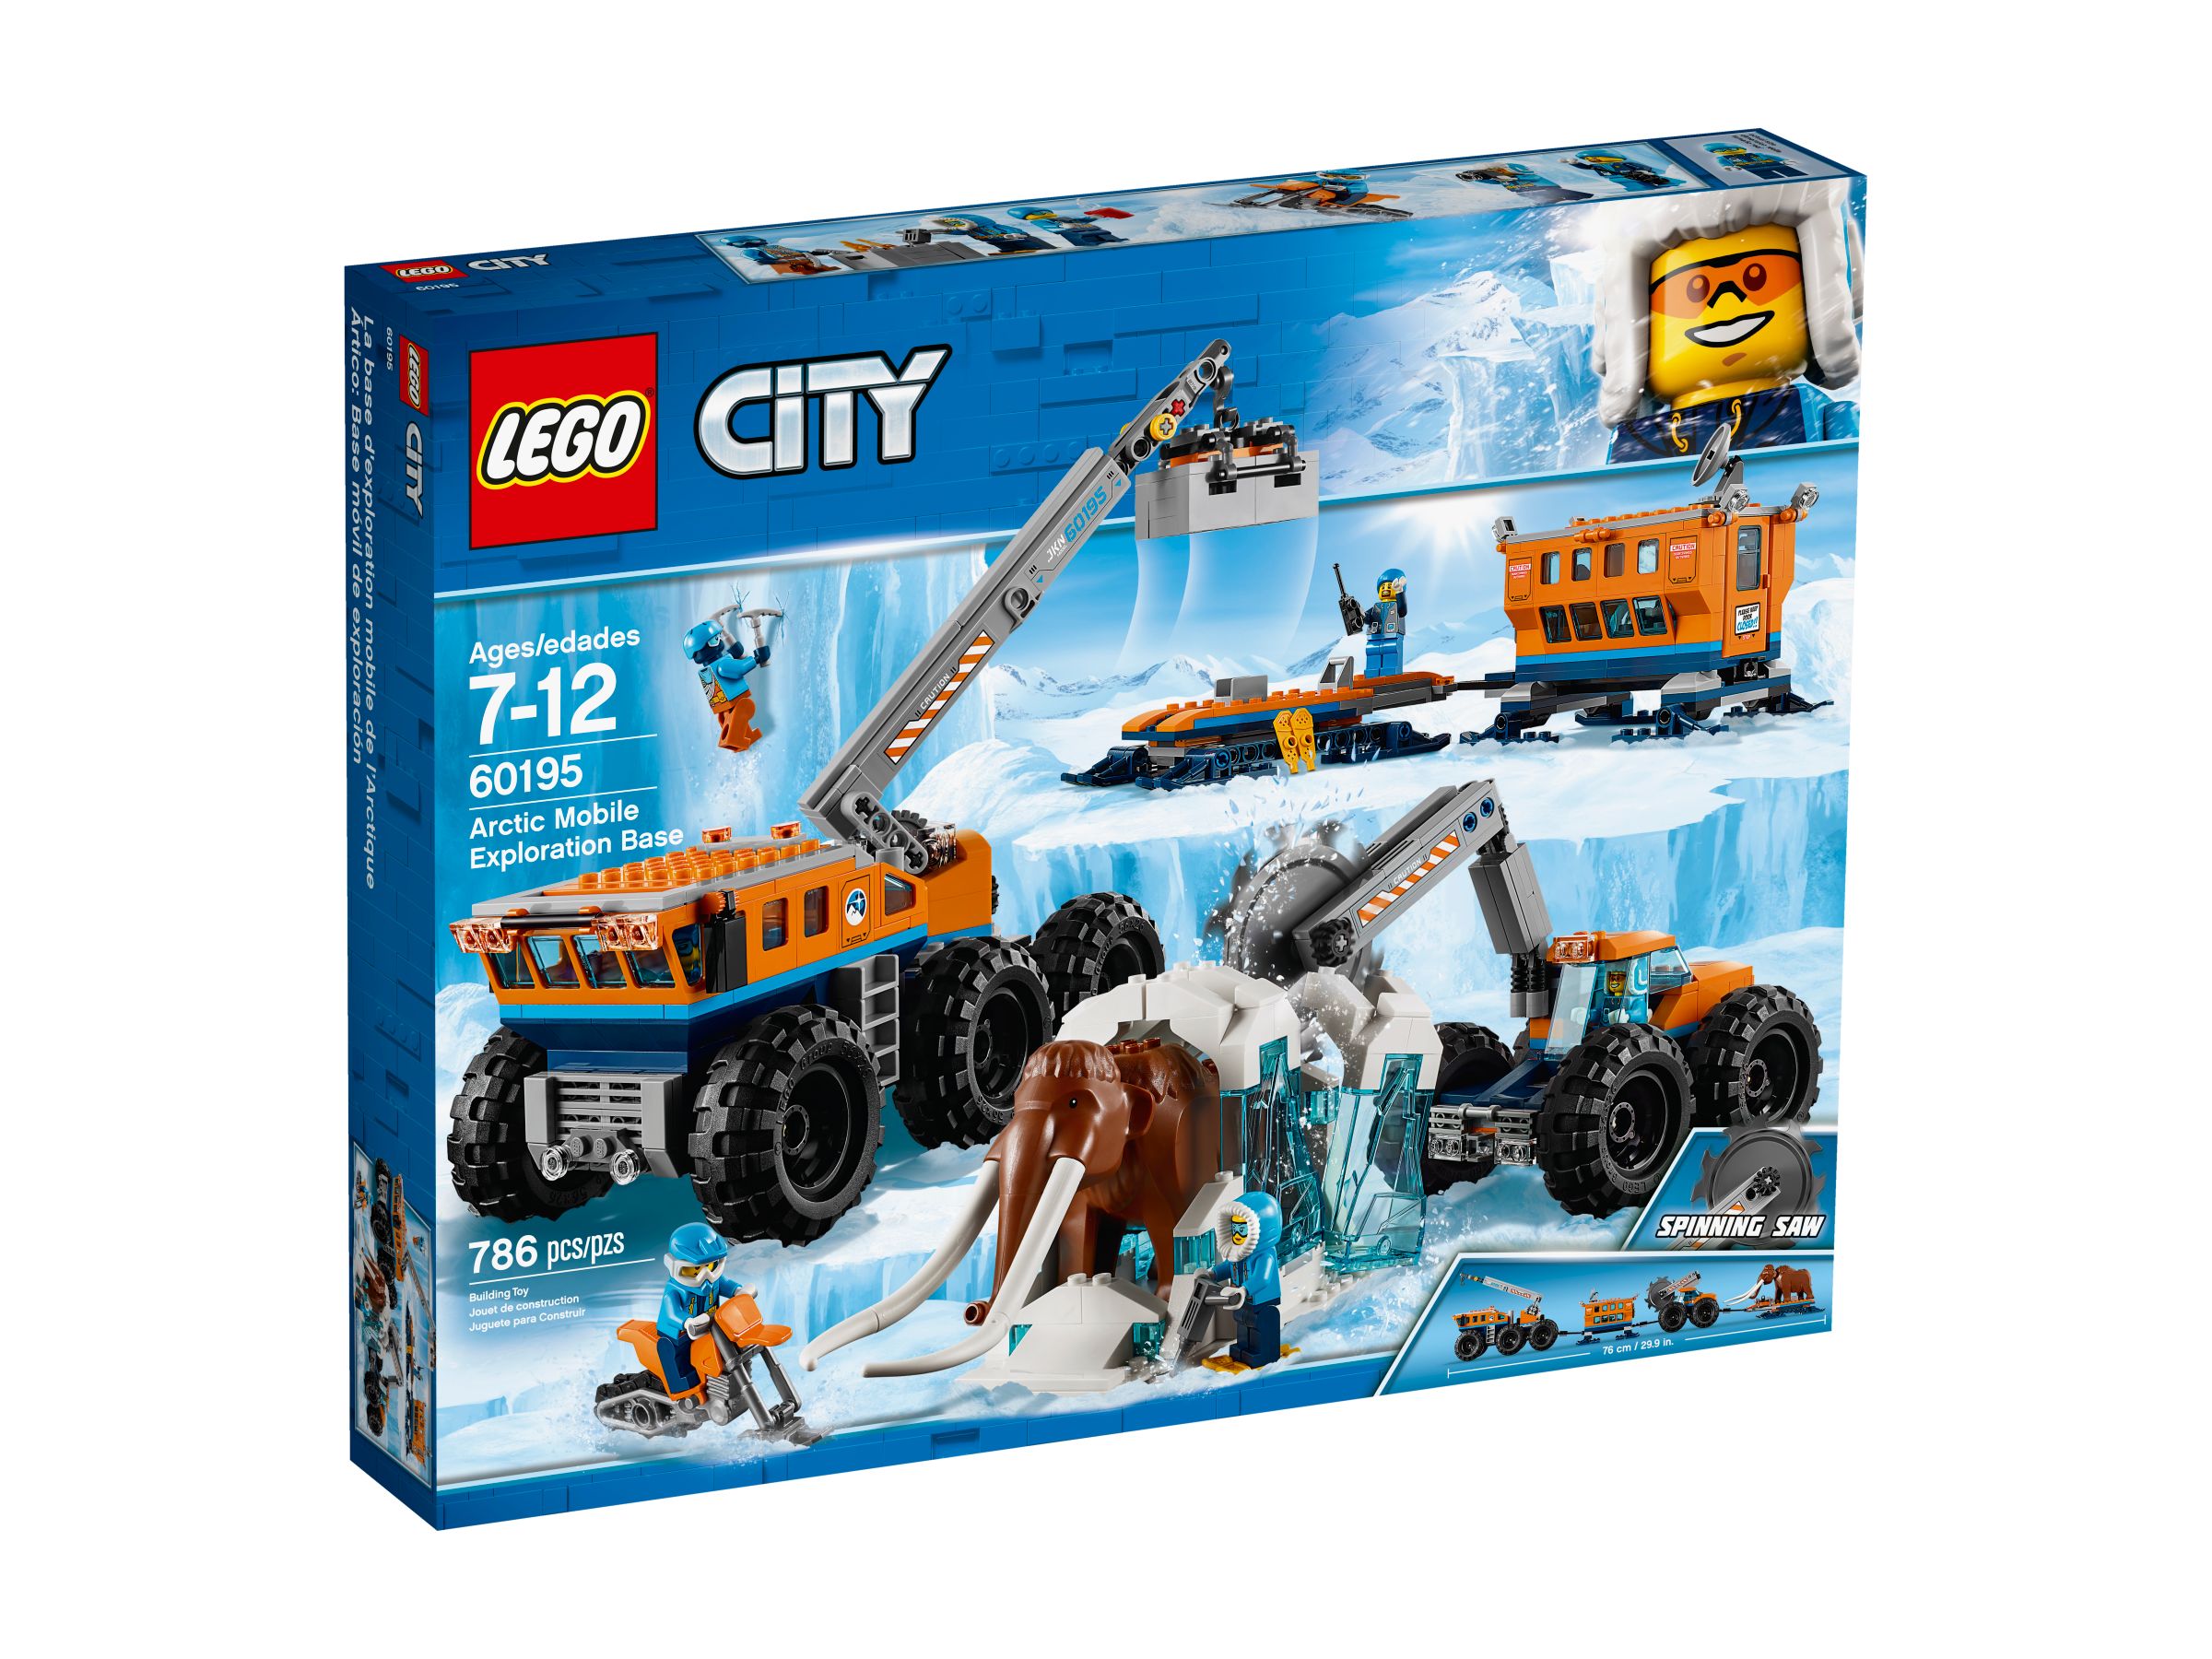 LEGO City 60195 Mobile Arktis-Forschungsstation LEGO_60195_alt1.jpg